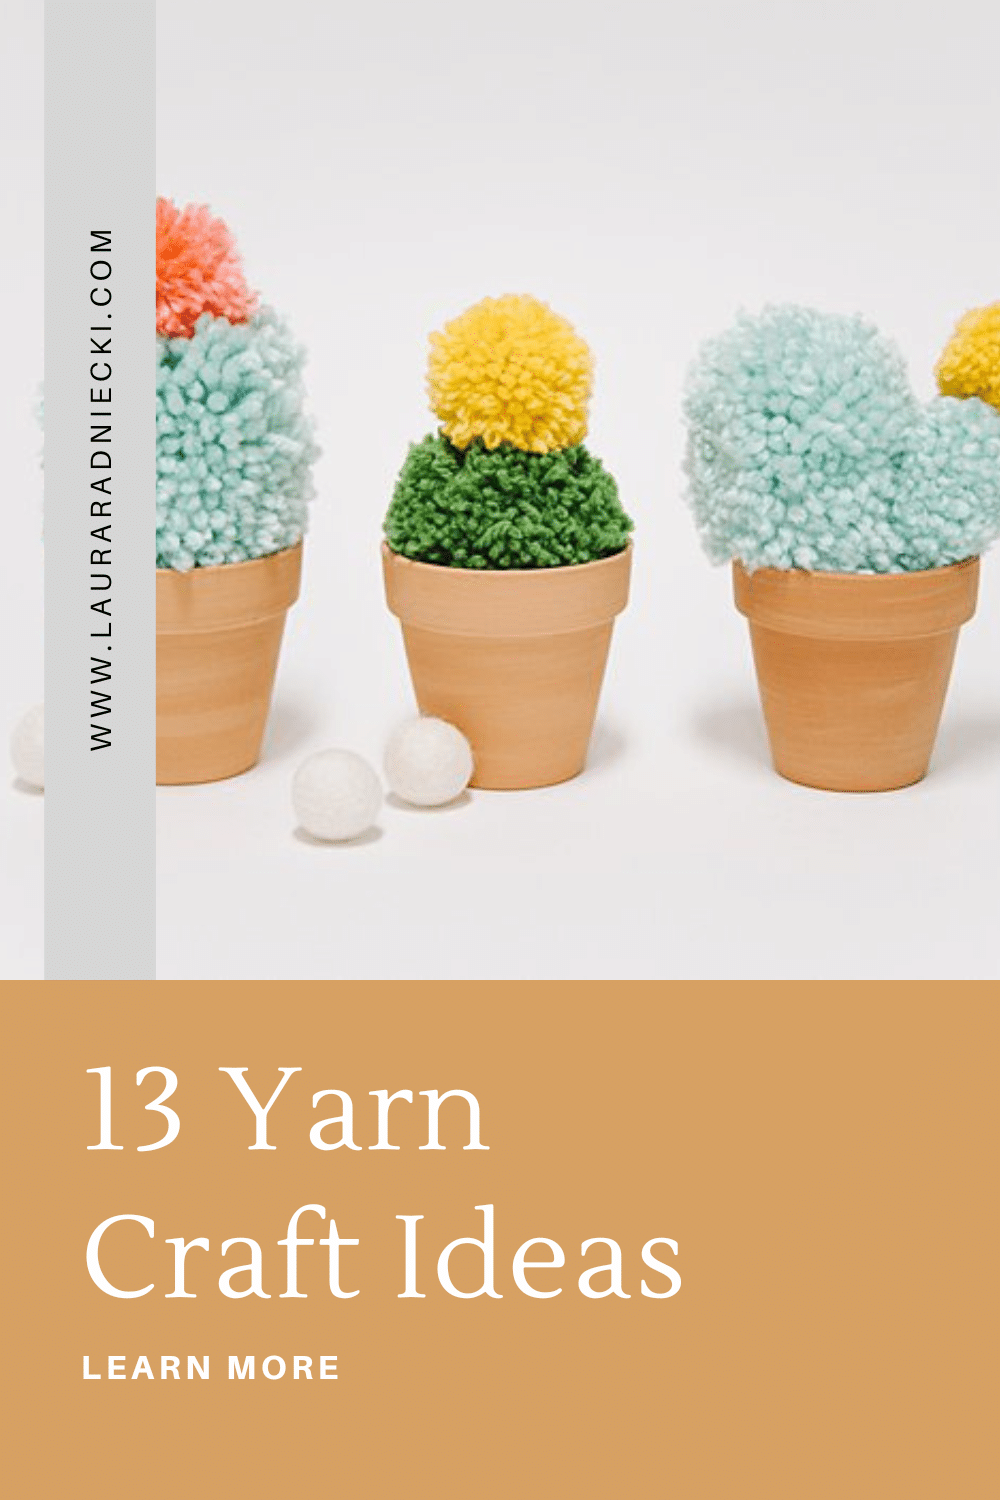 13 Easy Yarn Craft Ideas